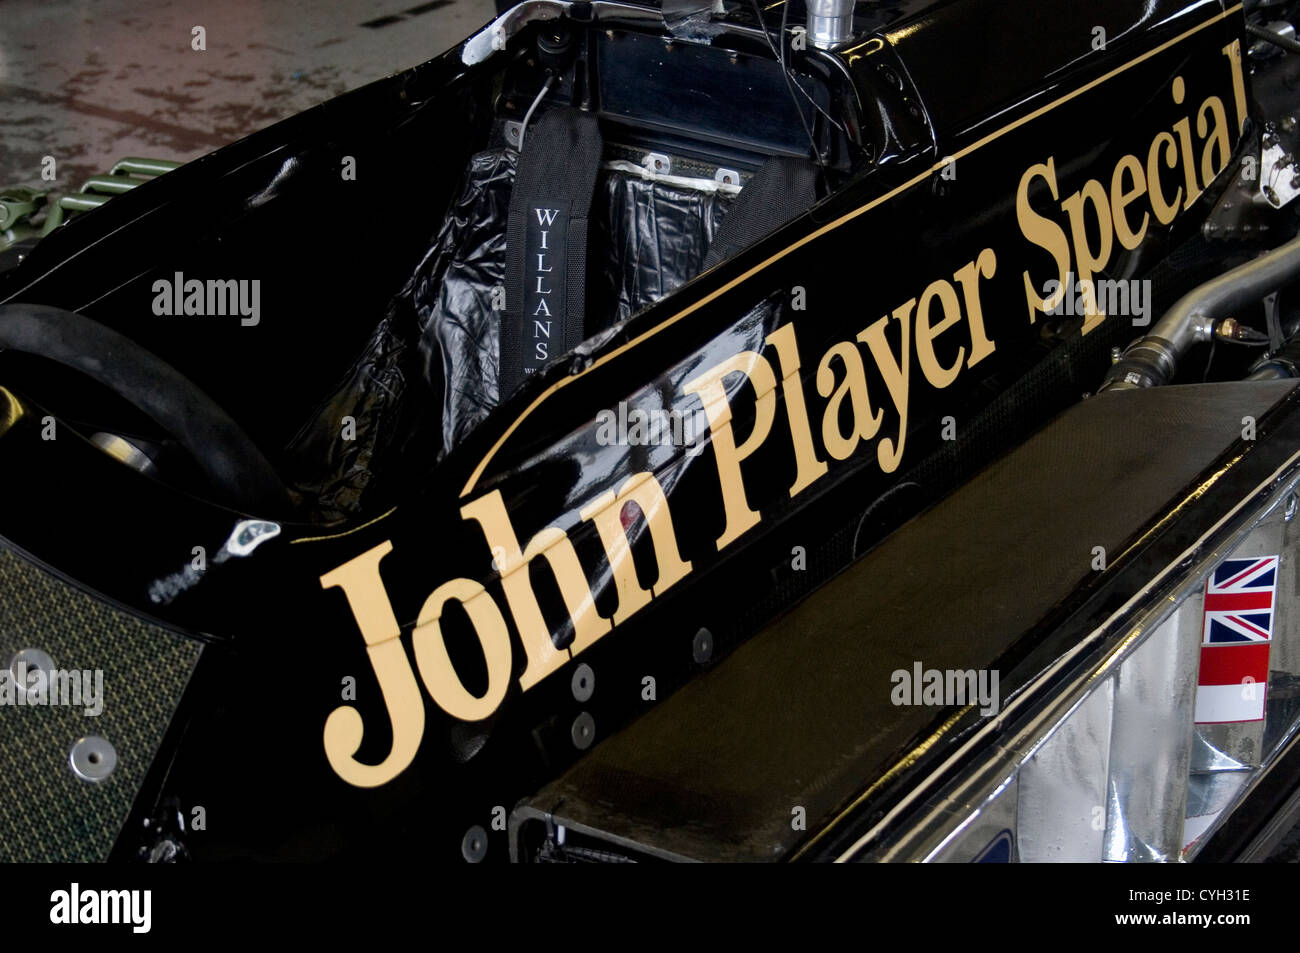 John Player Special parrainage sur la carrosserie d'une voiture de Formule 1 Lotus Banque D'Images